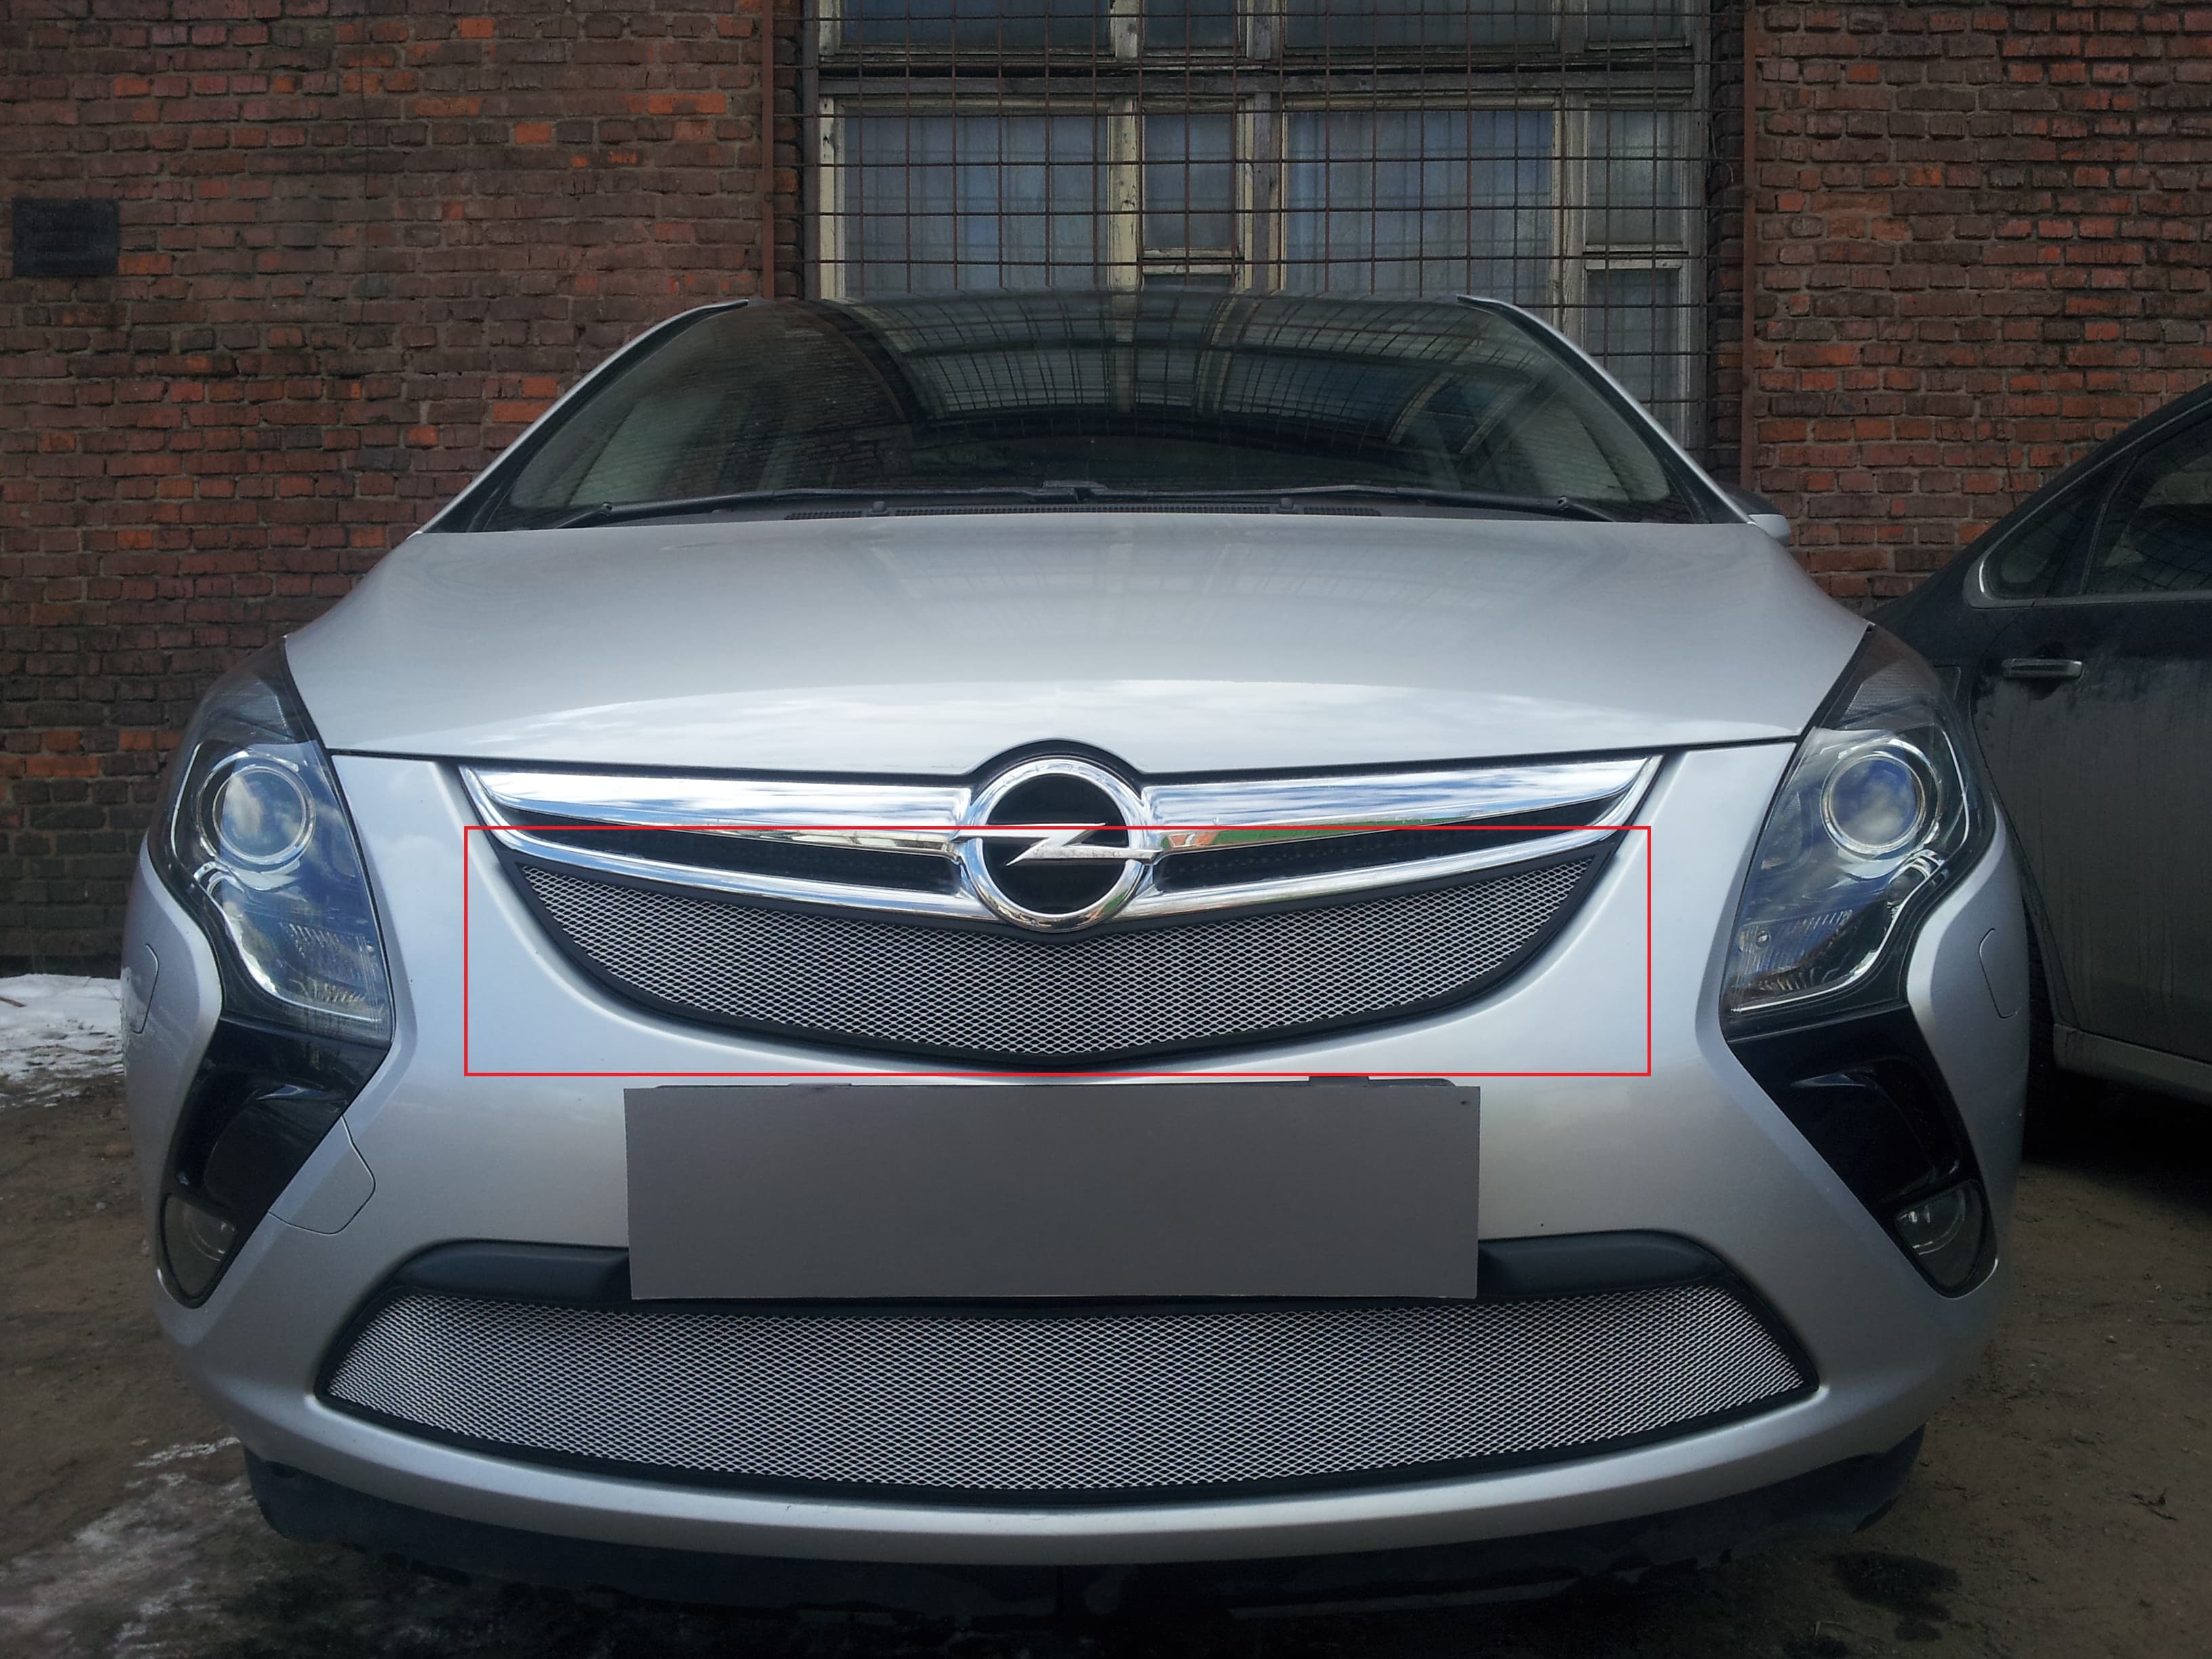 Защитная сетка радиатора ProtectGrille для Opel Zafira Tourer (2012-2015 Хром)